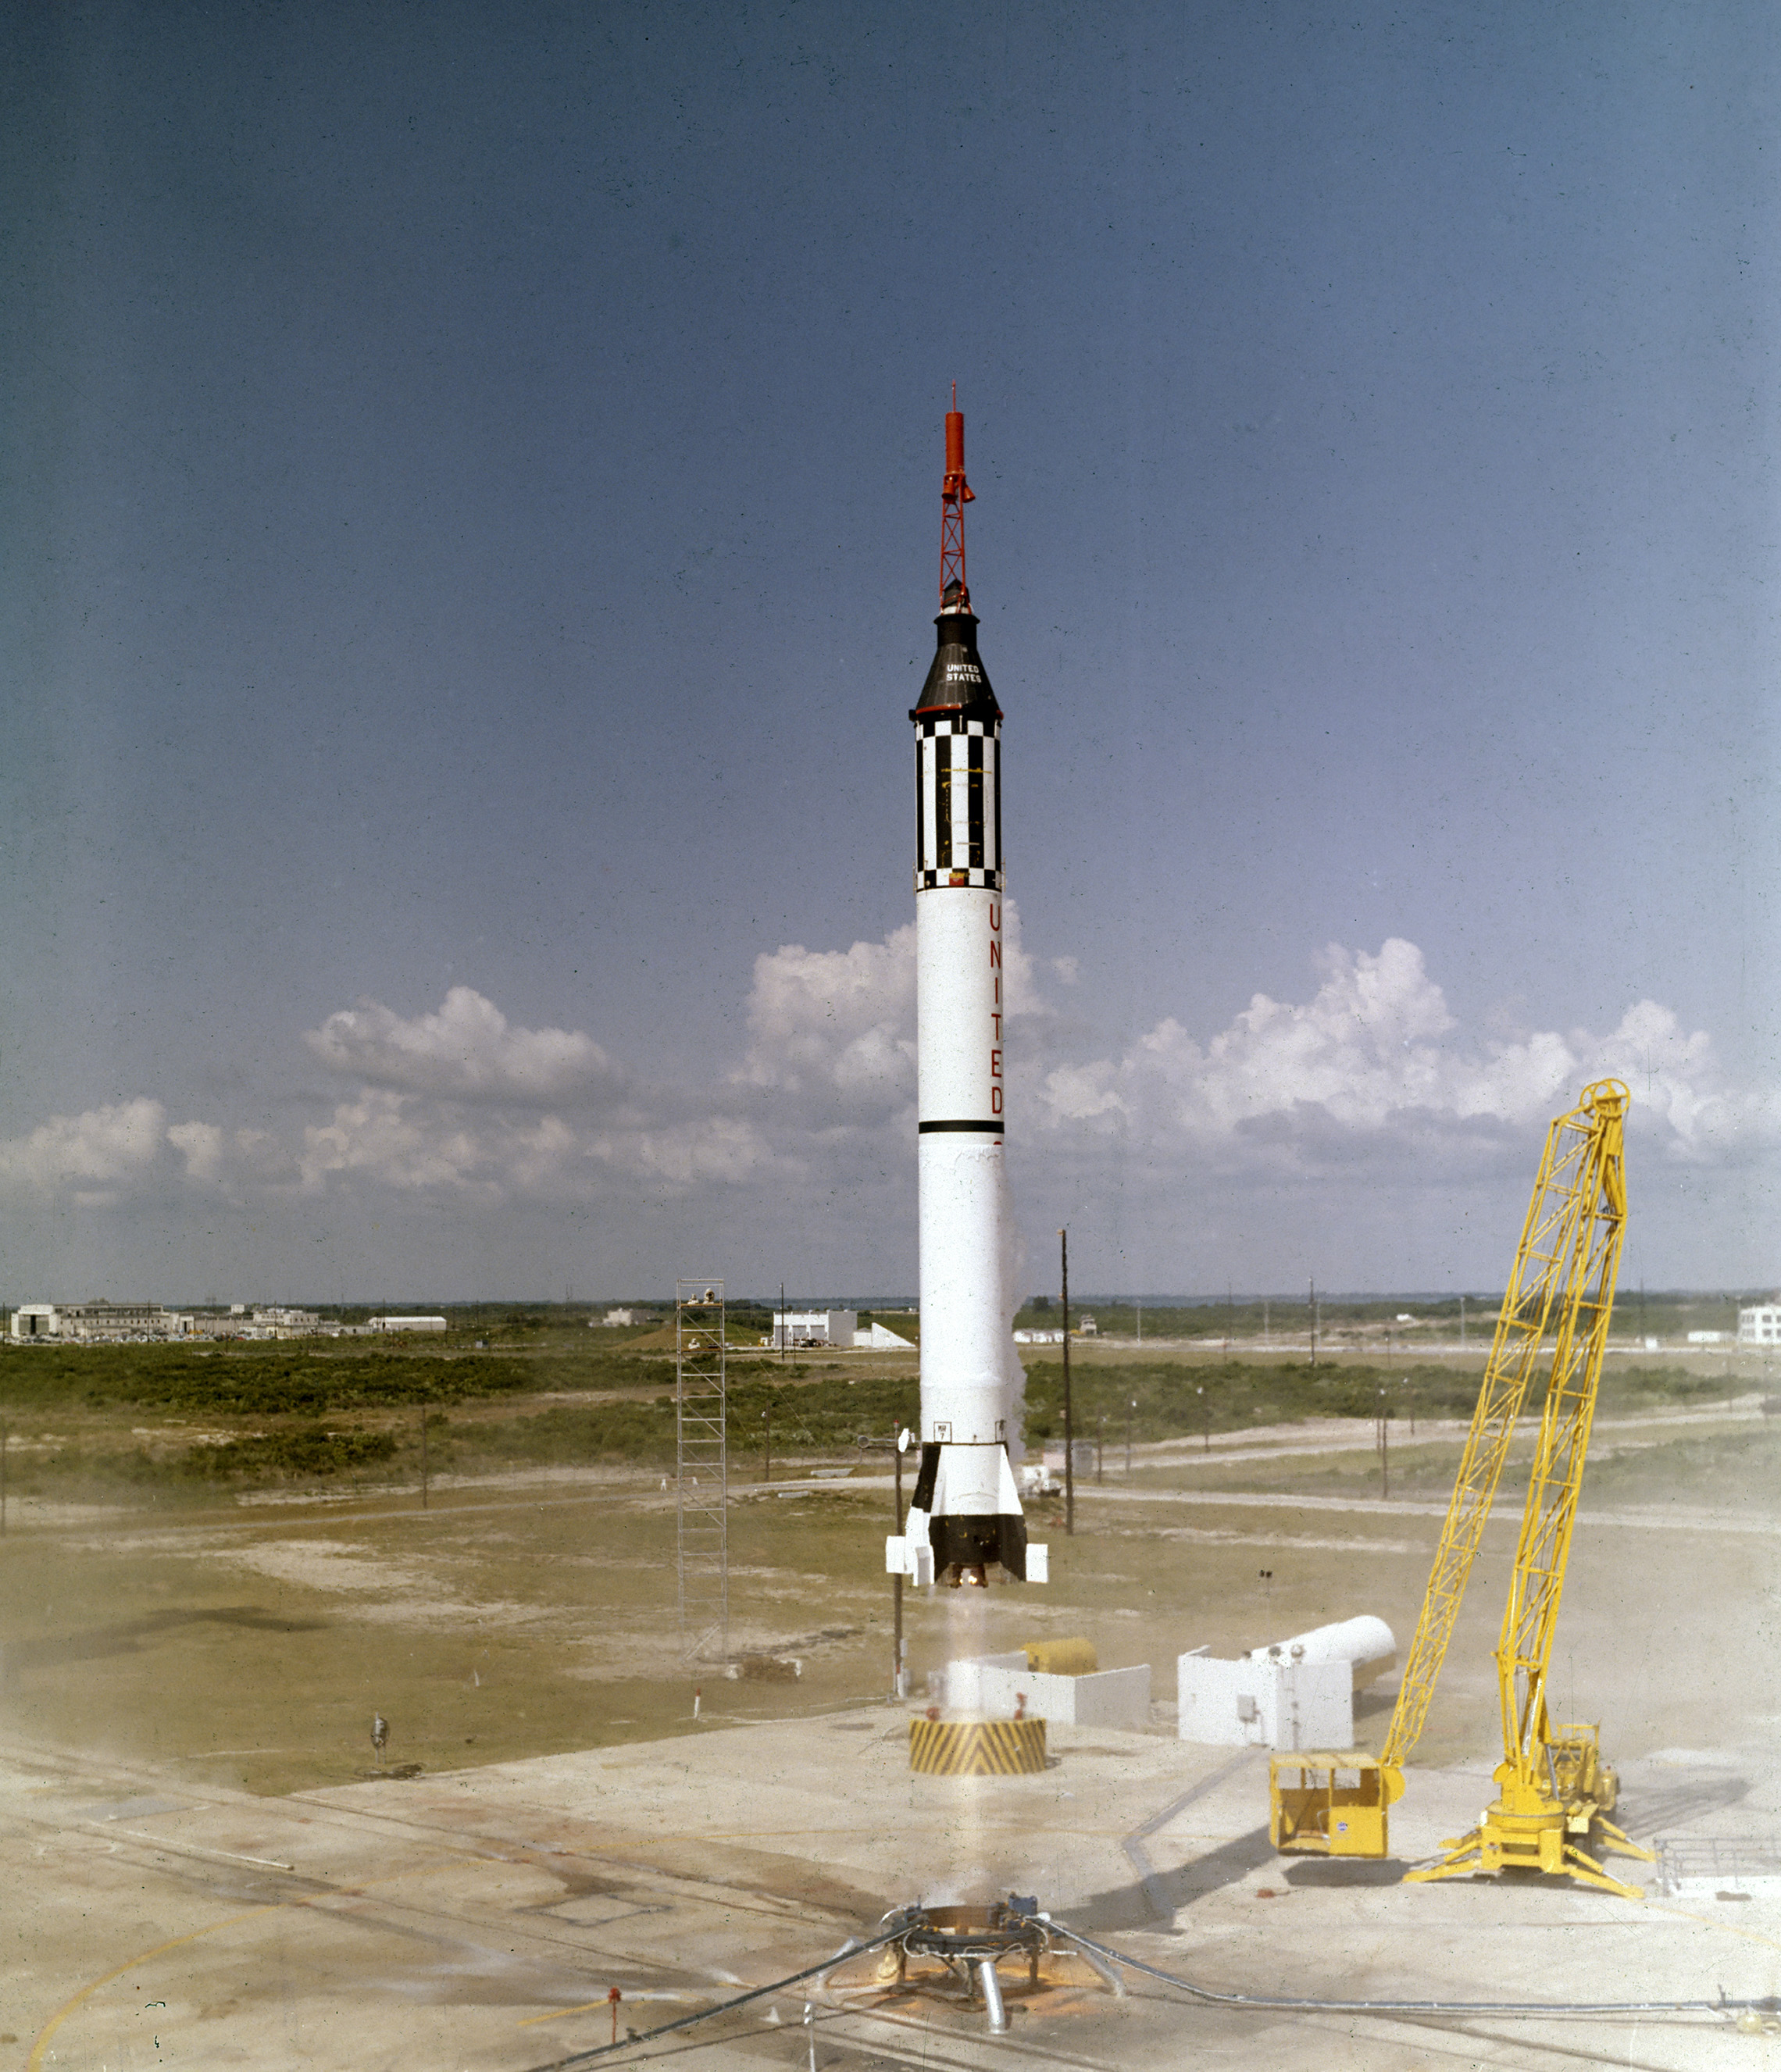 o astronauta Alan B. Shepard, Jr.levantou-se na nave espacial Freedom 7 Mercury em 5 de Maio de 1961. Este terceiro voo do veículo Mercury-Redstone (MR-3), desenvolvido pelo Dr. Wernher von Braun e a equipe de foguetes em Huntsille, Alabama, foi a primeira missão espacial tripulada para os Estados Unidos. Durante o voo suborbital de 15 minutos, Shepard atingiu uma altitude de 115 milhas e viajou 302 milhas abaixo. O astronauta Alan B. Shepard Jr., da NASA, levantou-se na nave espacial Freedom 7 Mercury em 5 de Maio de 1961. Este terceiro voo do veículo Mercury-Redstone (MR-3), desenvolvido pelo Dr. Wernher von Braun e a equipe de foguetes em Hunsville, Alabama, foi a primeira missão espacial tripulada para os Estados Unidos. Durante o voo suborbital de 15 minutos-que atingiu uma velocidade máxima de 5,180 mph-Shepard atingiu uma altitude de 116 milhas e viajou 302 milhas abaixo.